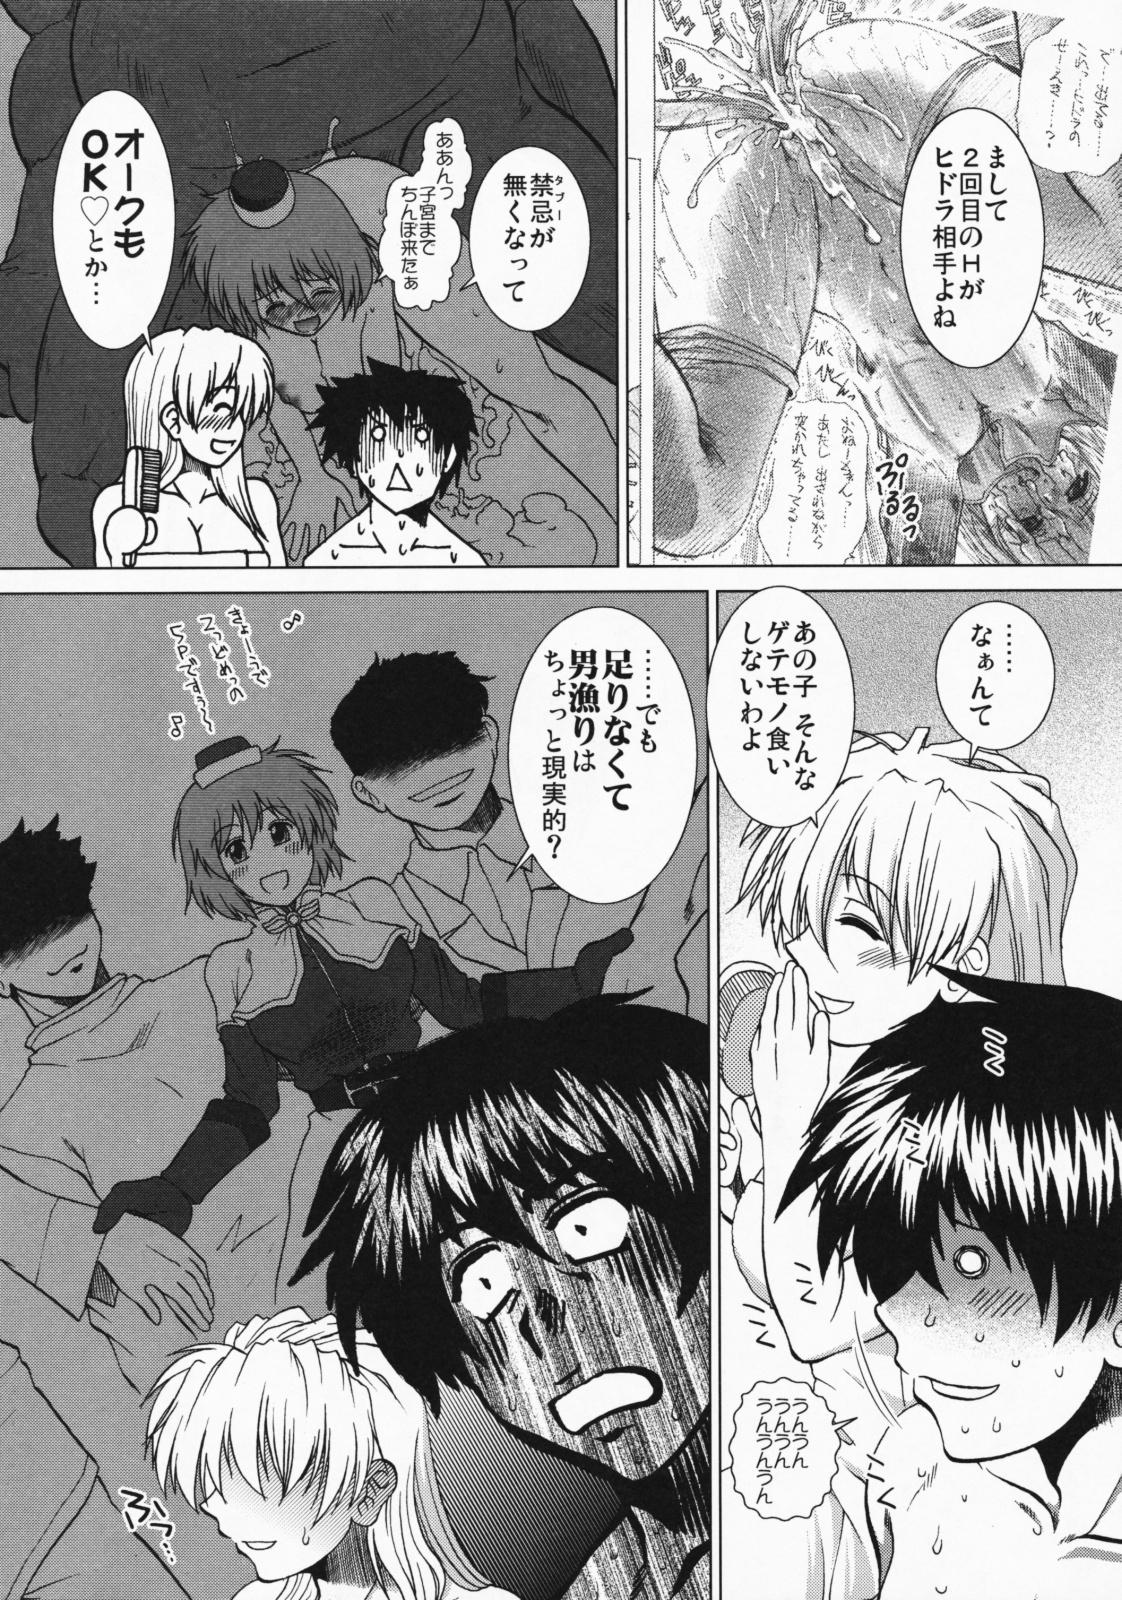 Comic Pruntera Extend Vol. 2 Taiyou wa Yuugure Toki ni Noboru 7